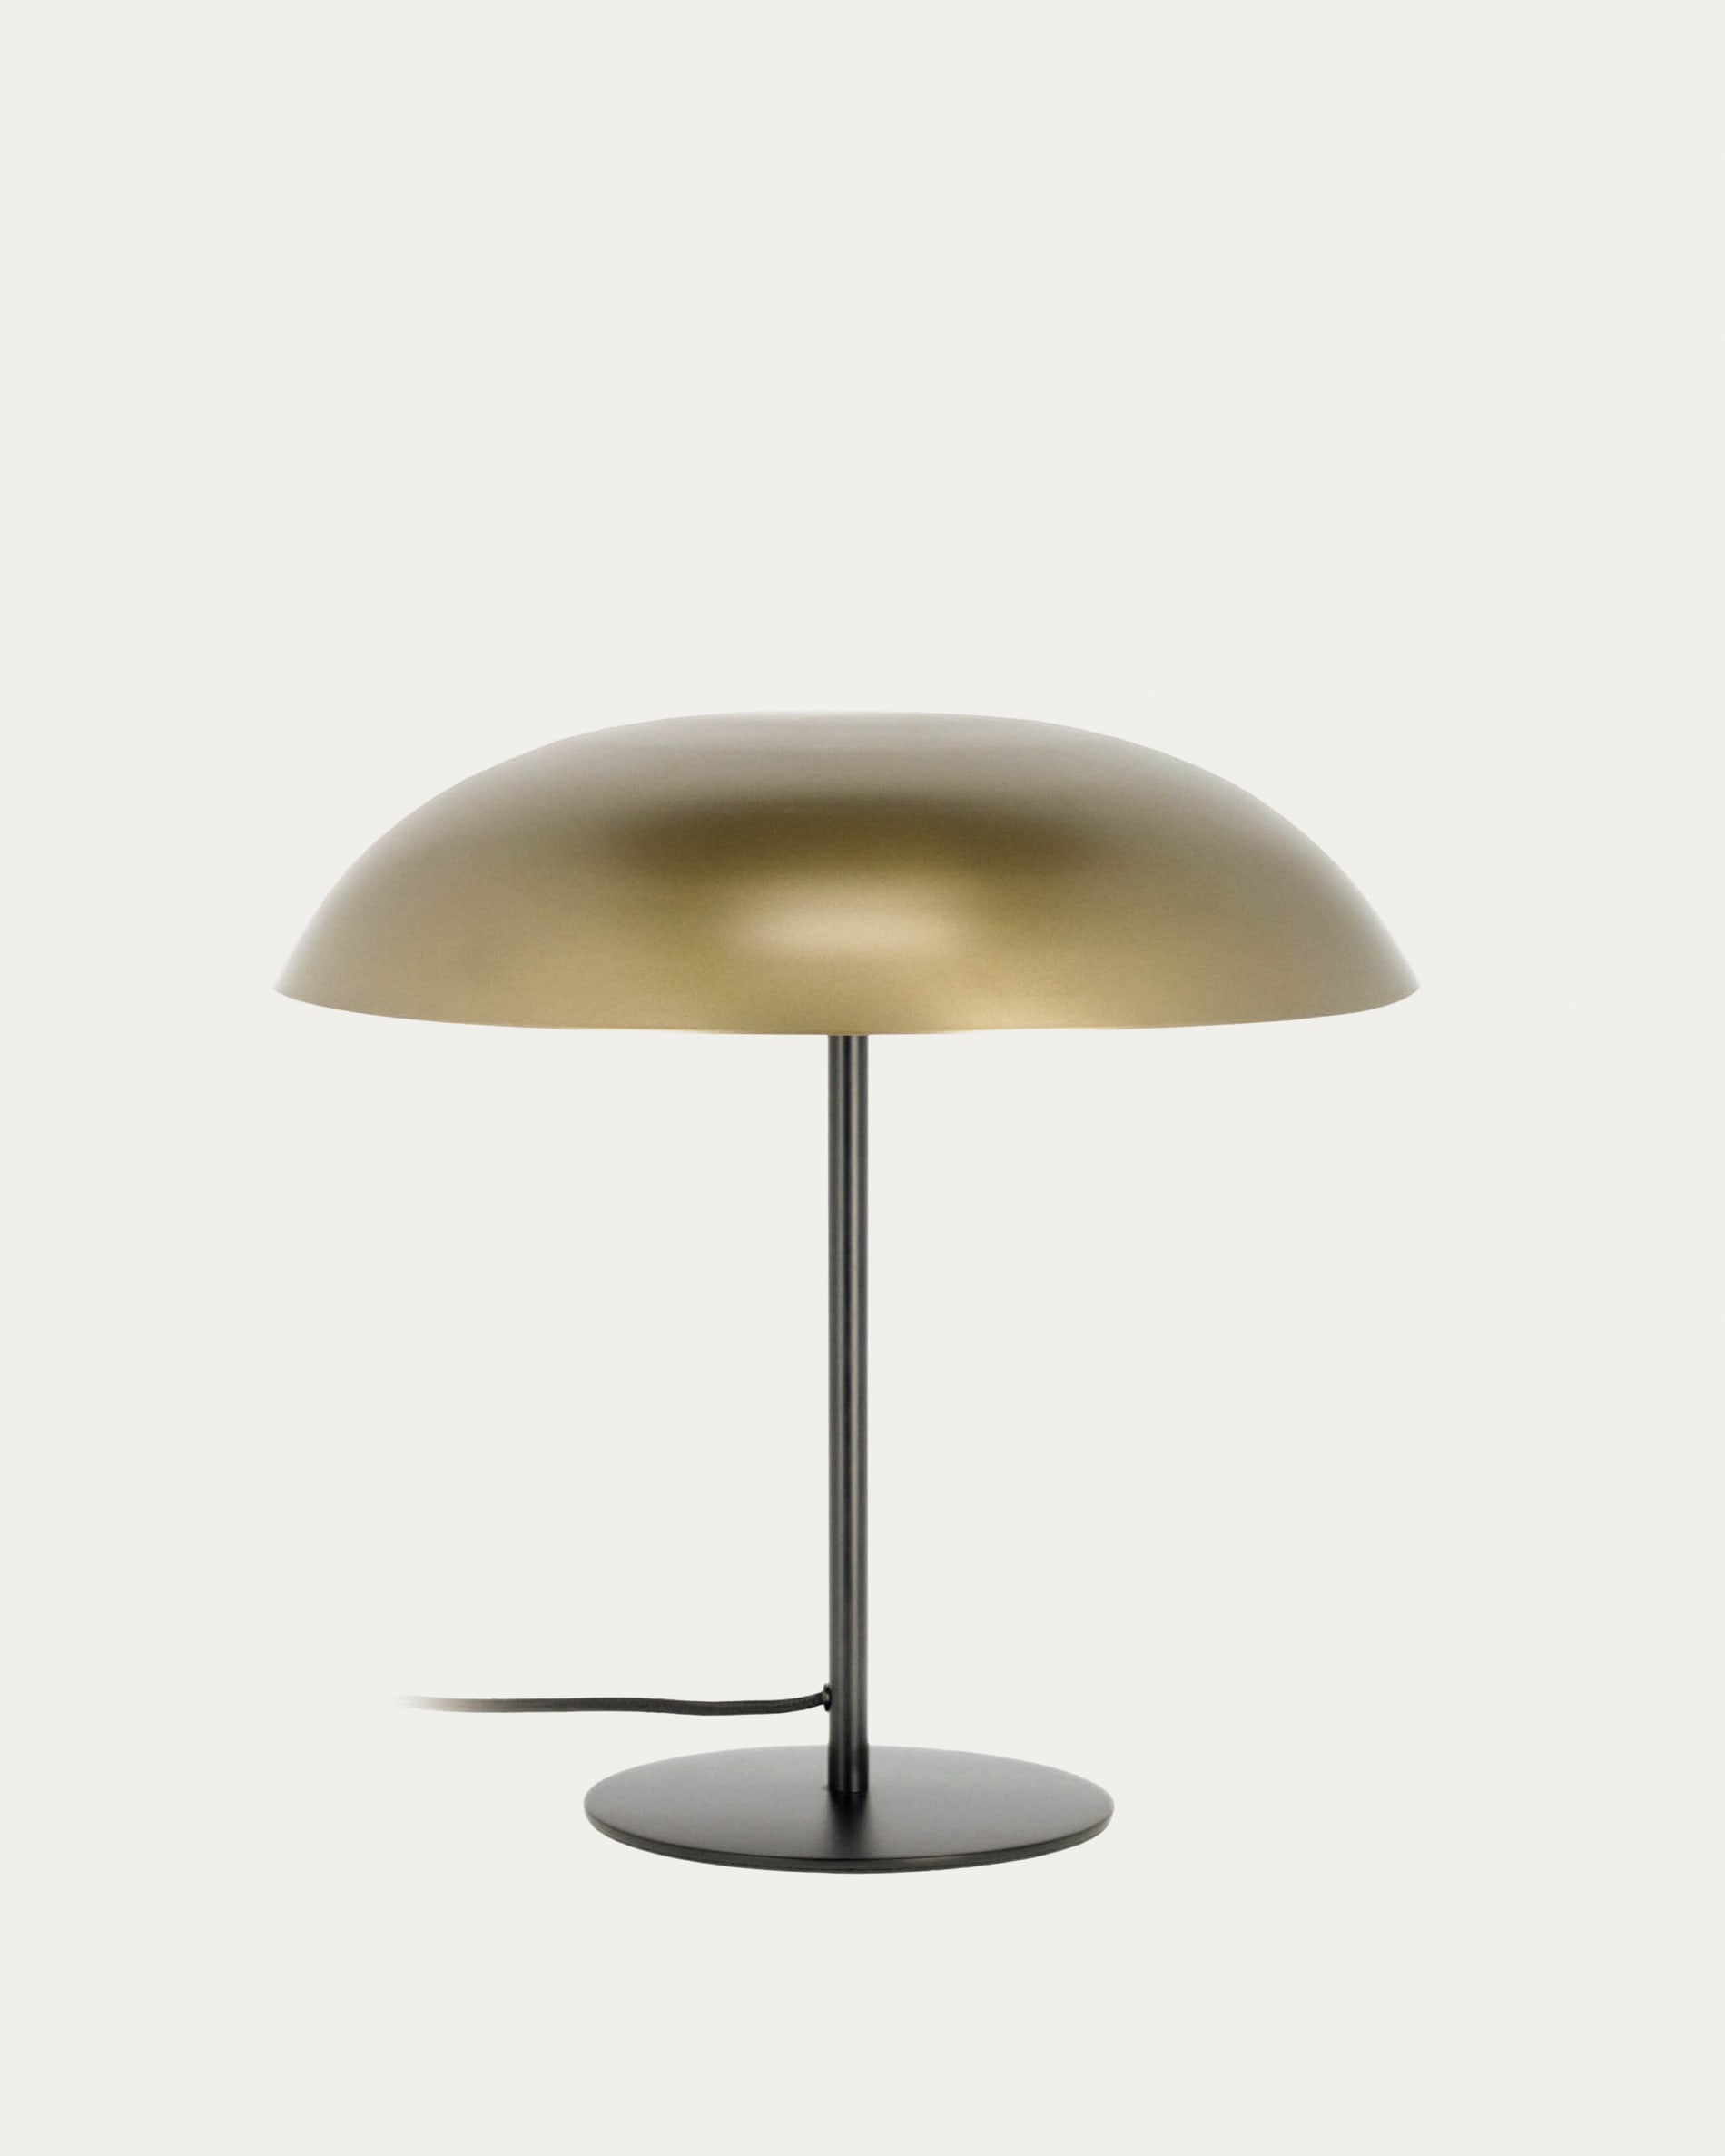 Lampe 3d, lampe ambiance, decoration zen, luminaire salon